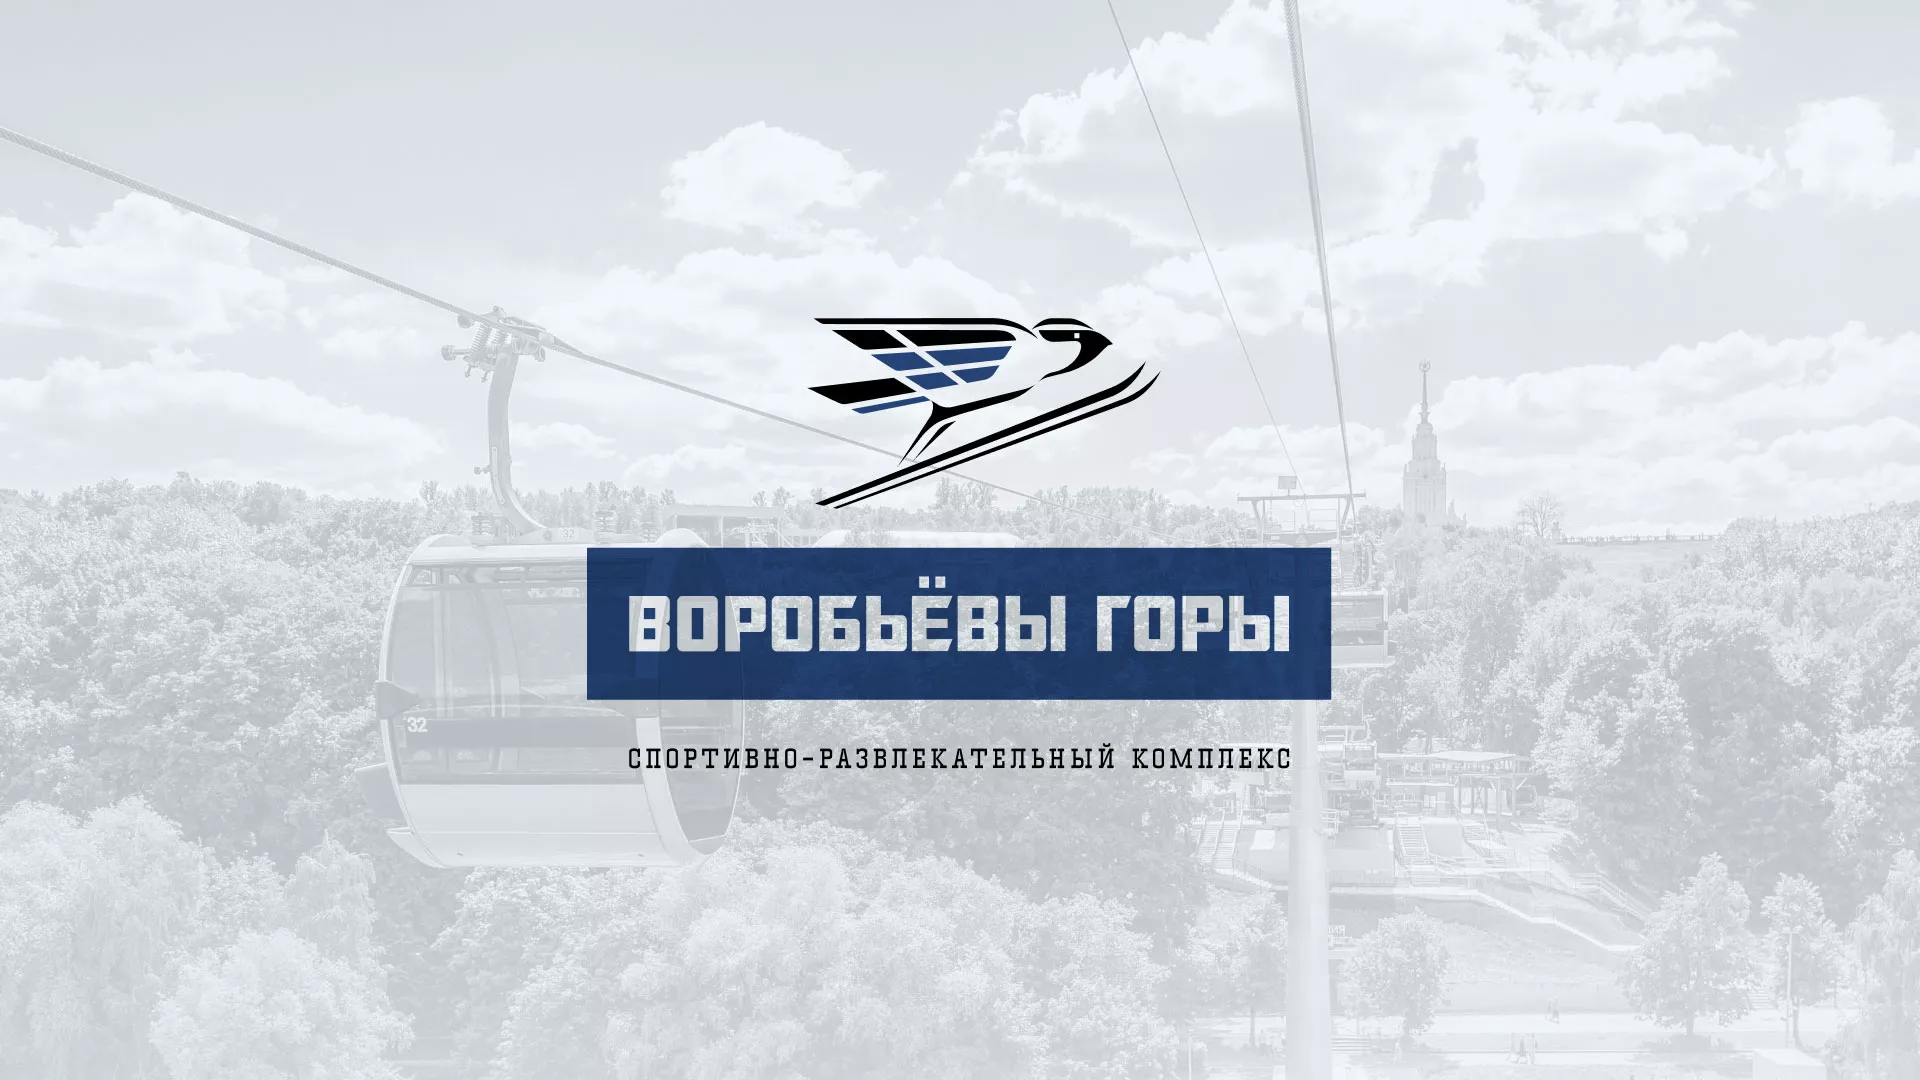 Разработка сайта в Владимире для спортивно-развлекательного комплекса «Воробьёвы горы»